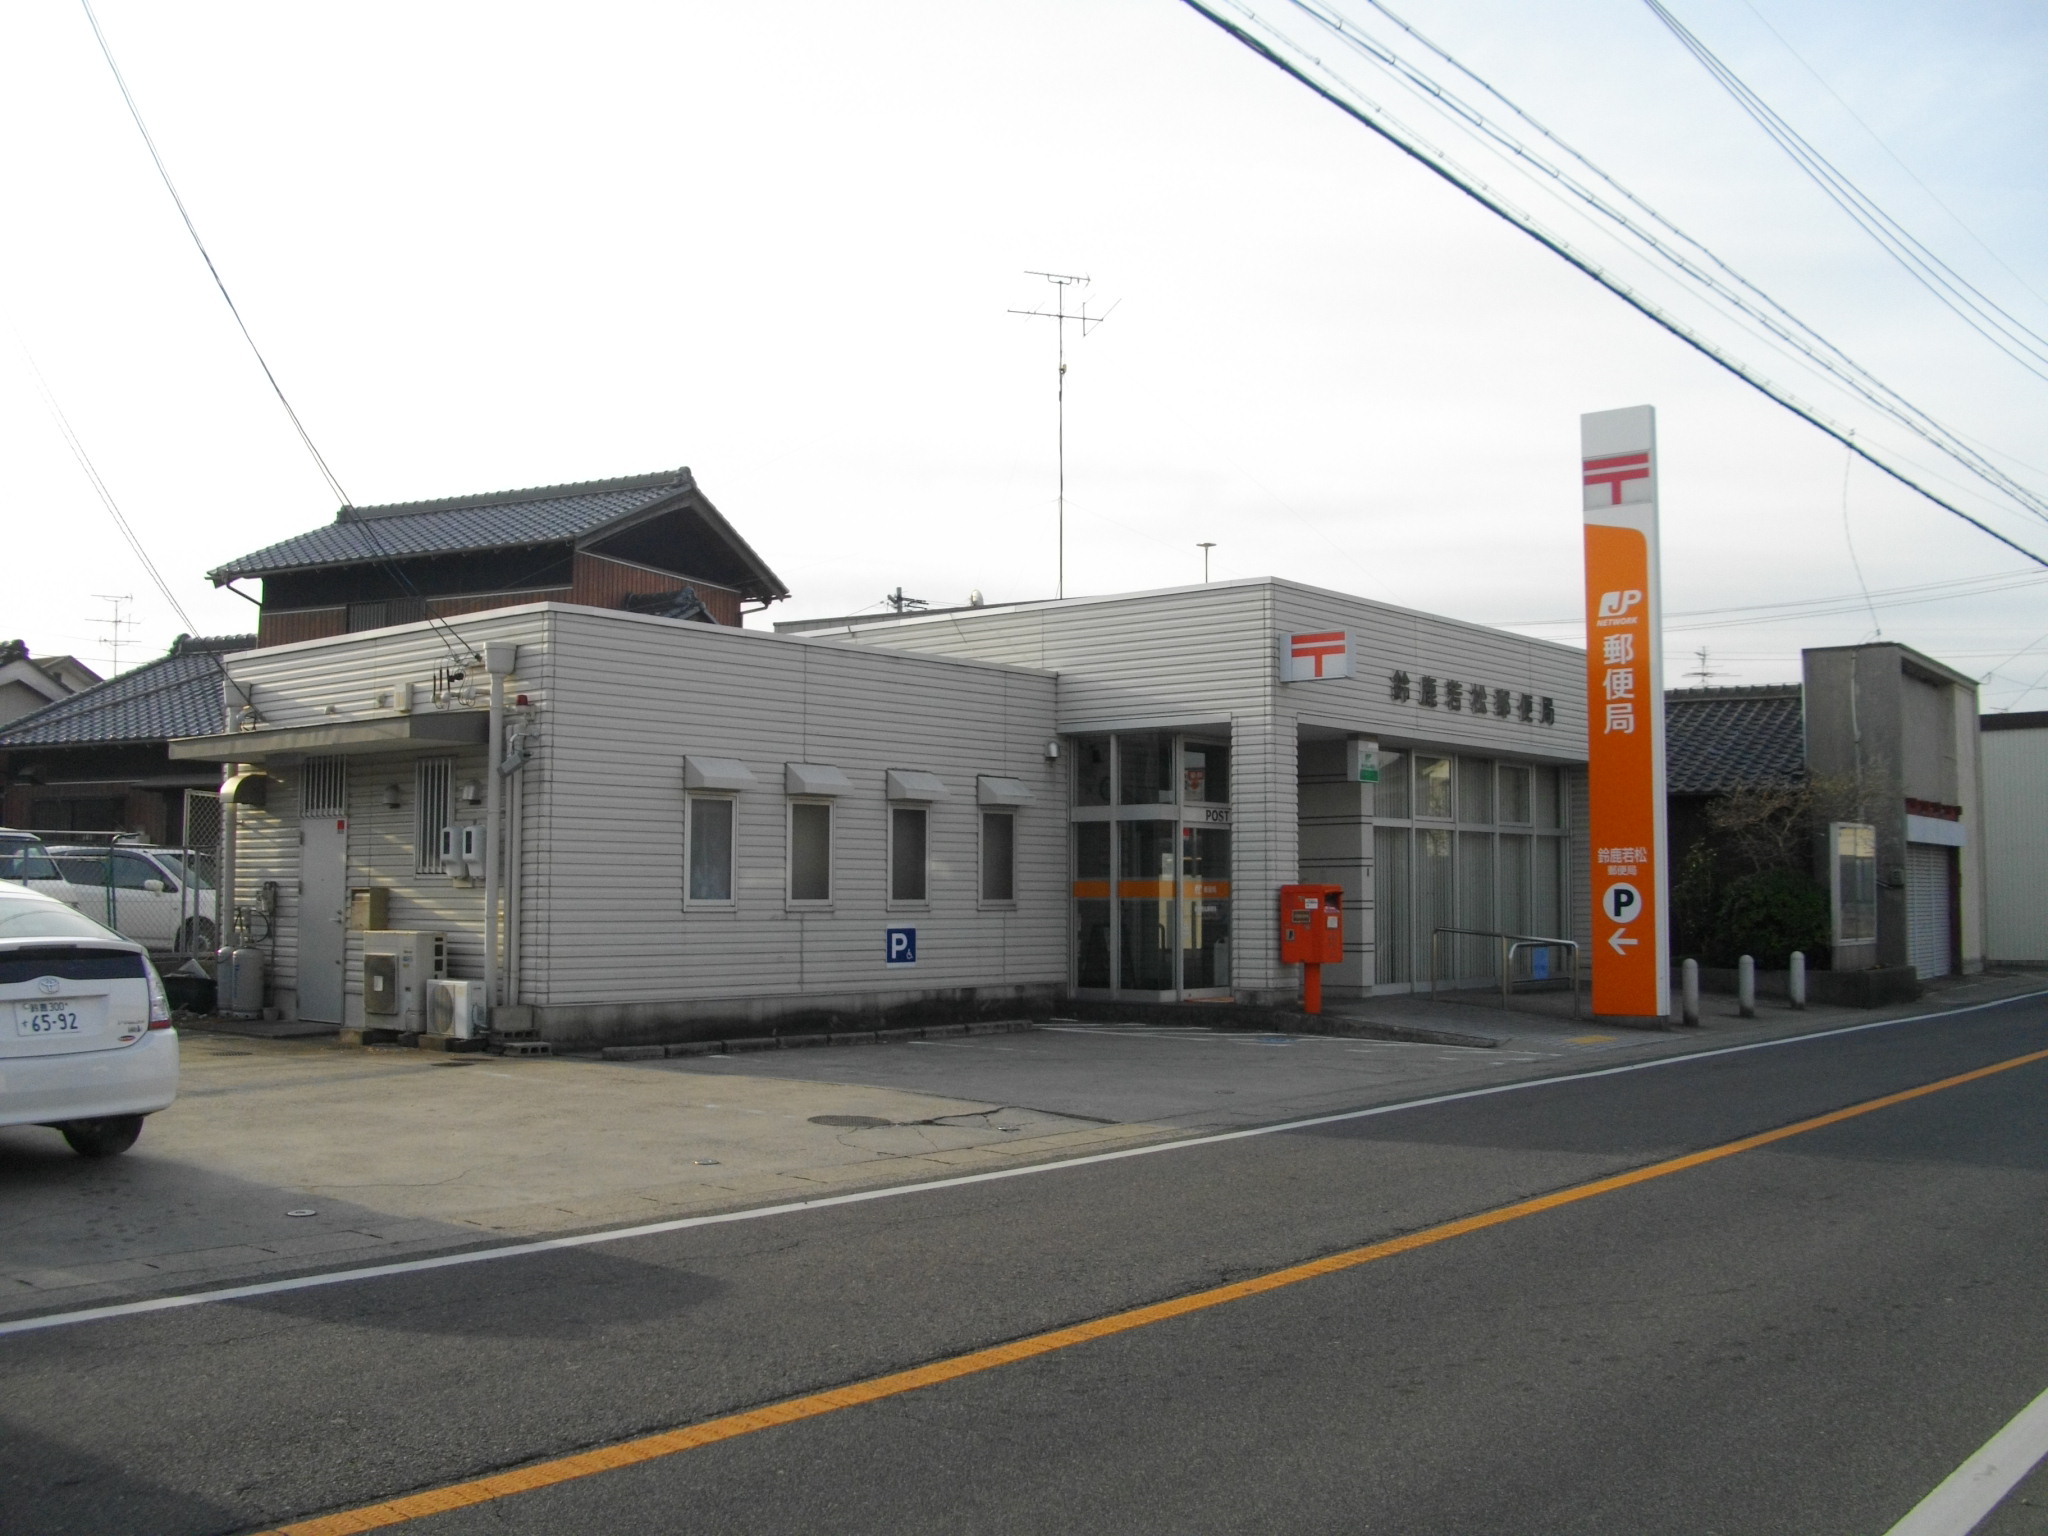 post office. 954m until Suzuka Wakamatsu post office (post office)